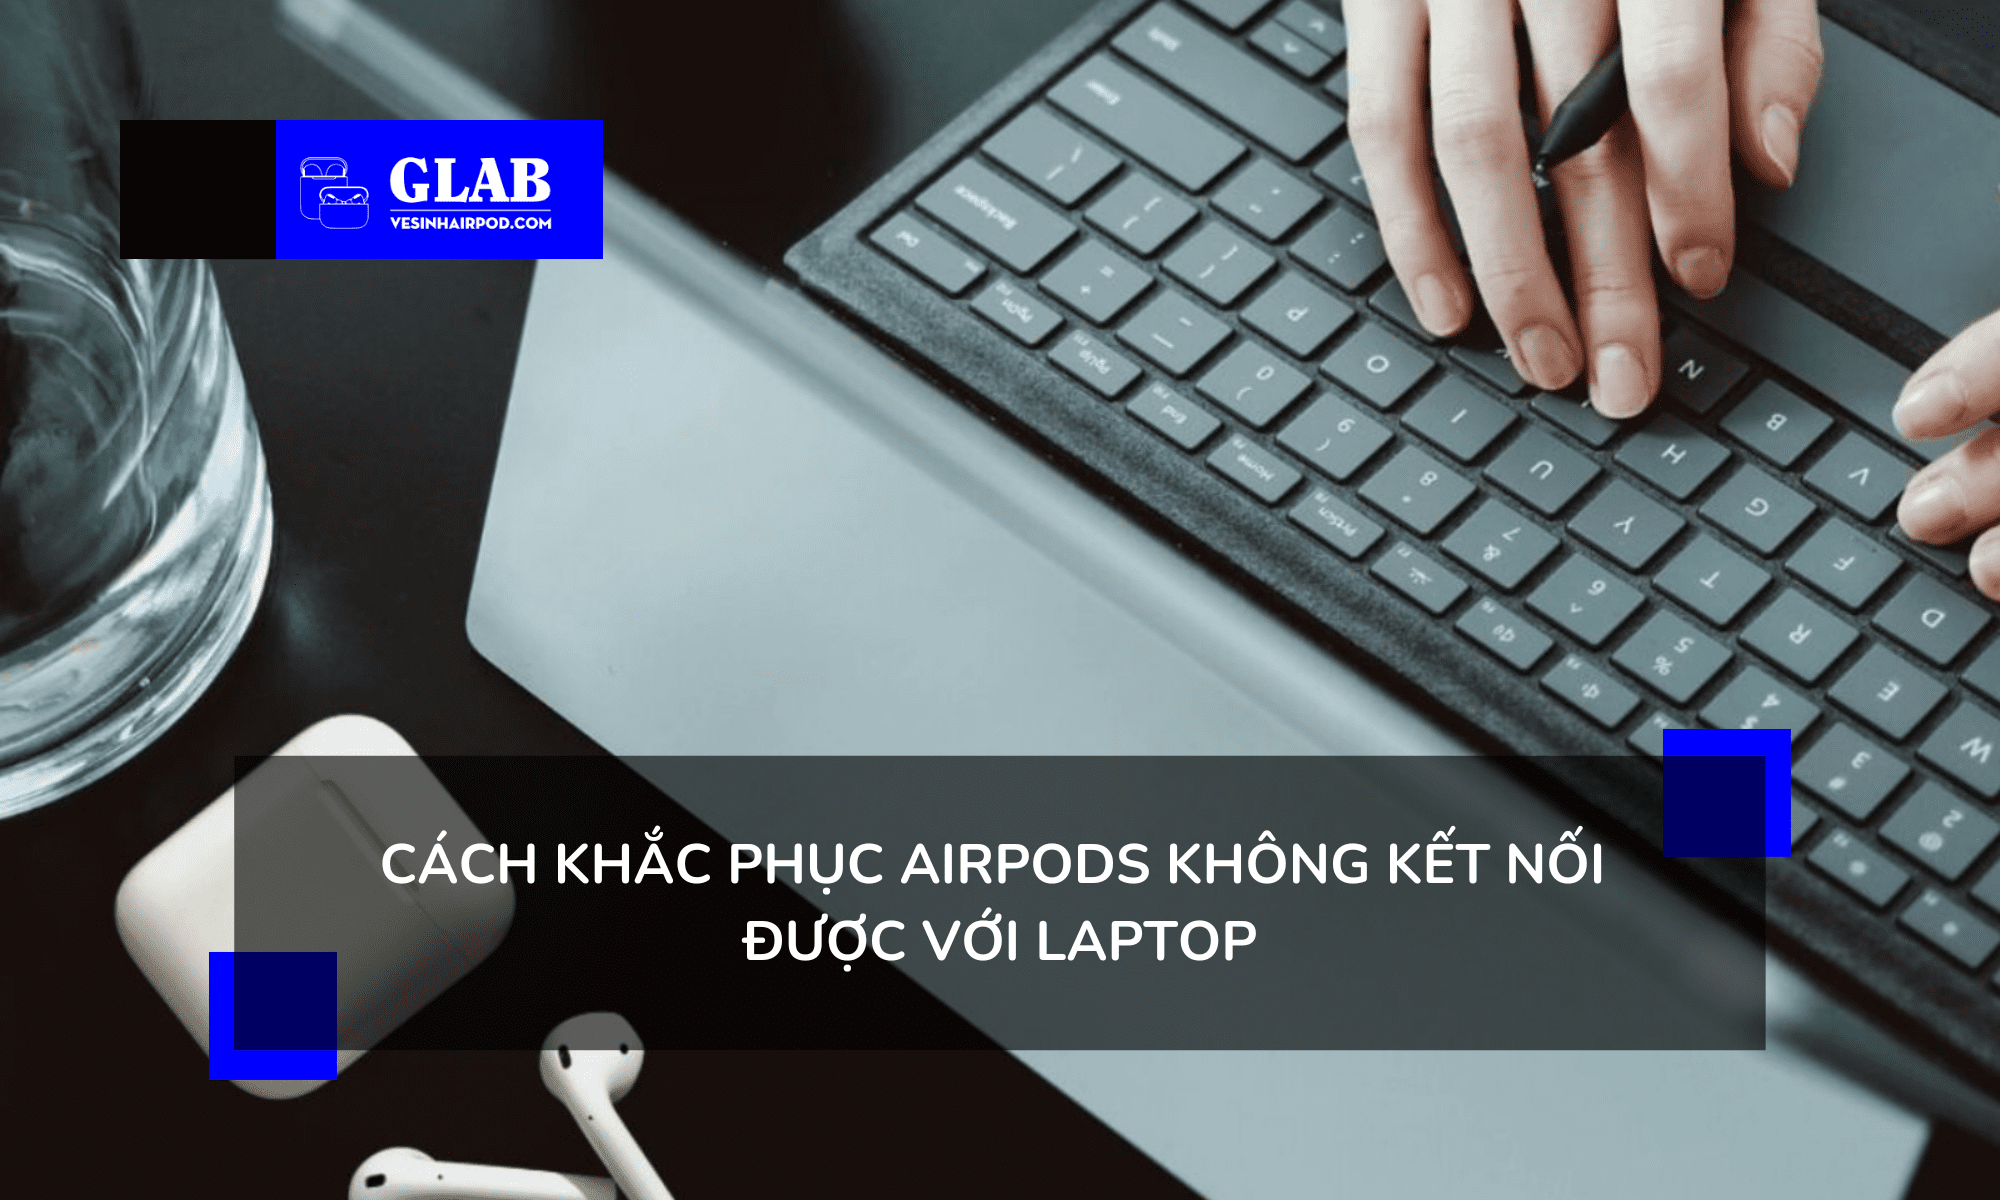 ket-noi-airpod-voi-laptop 